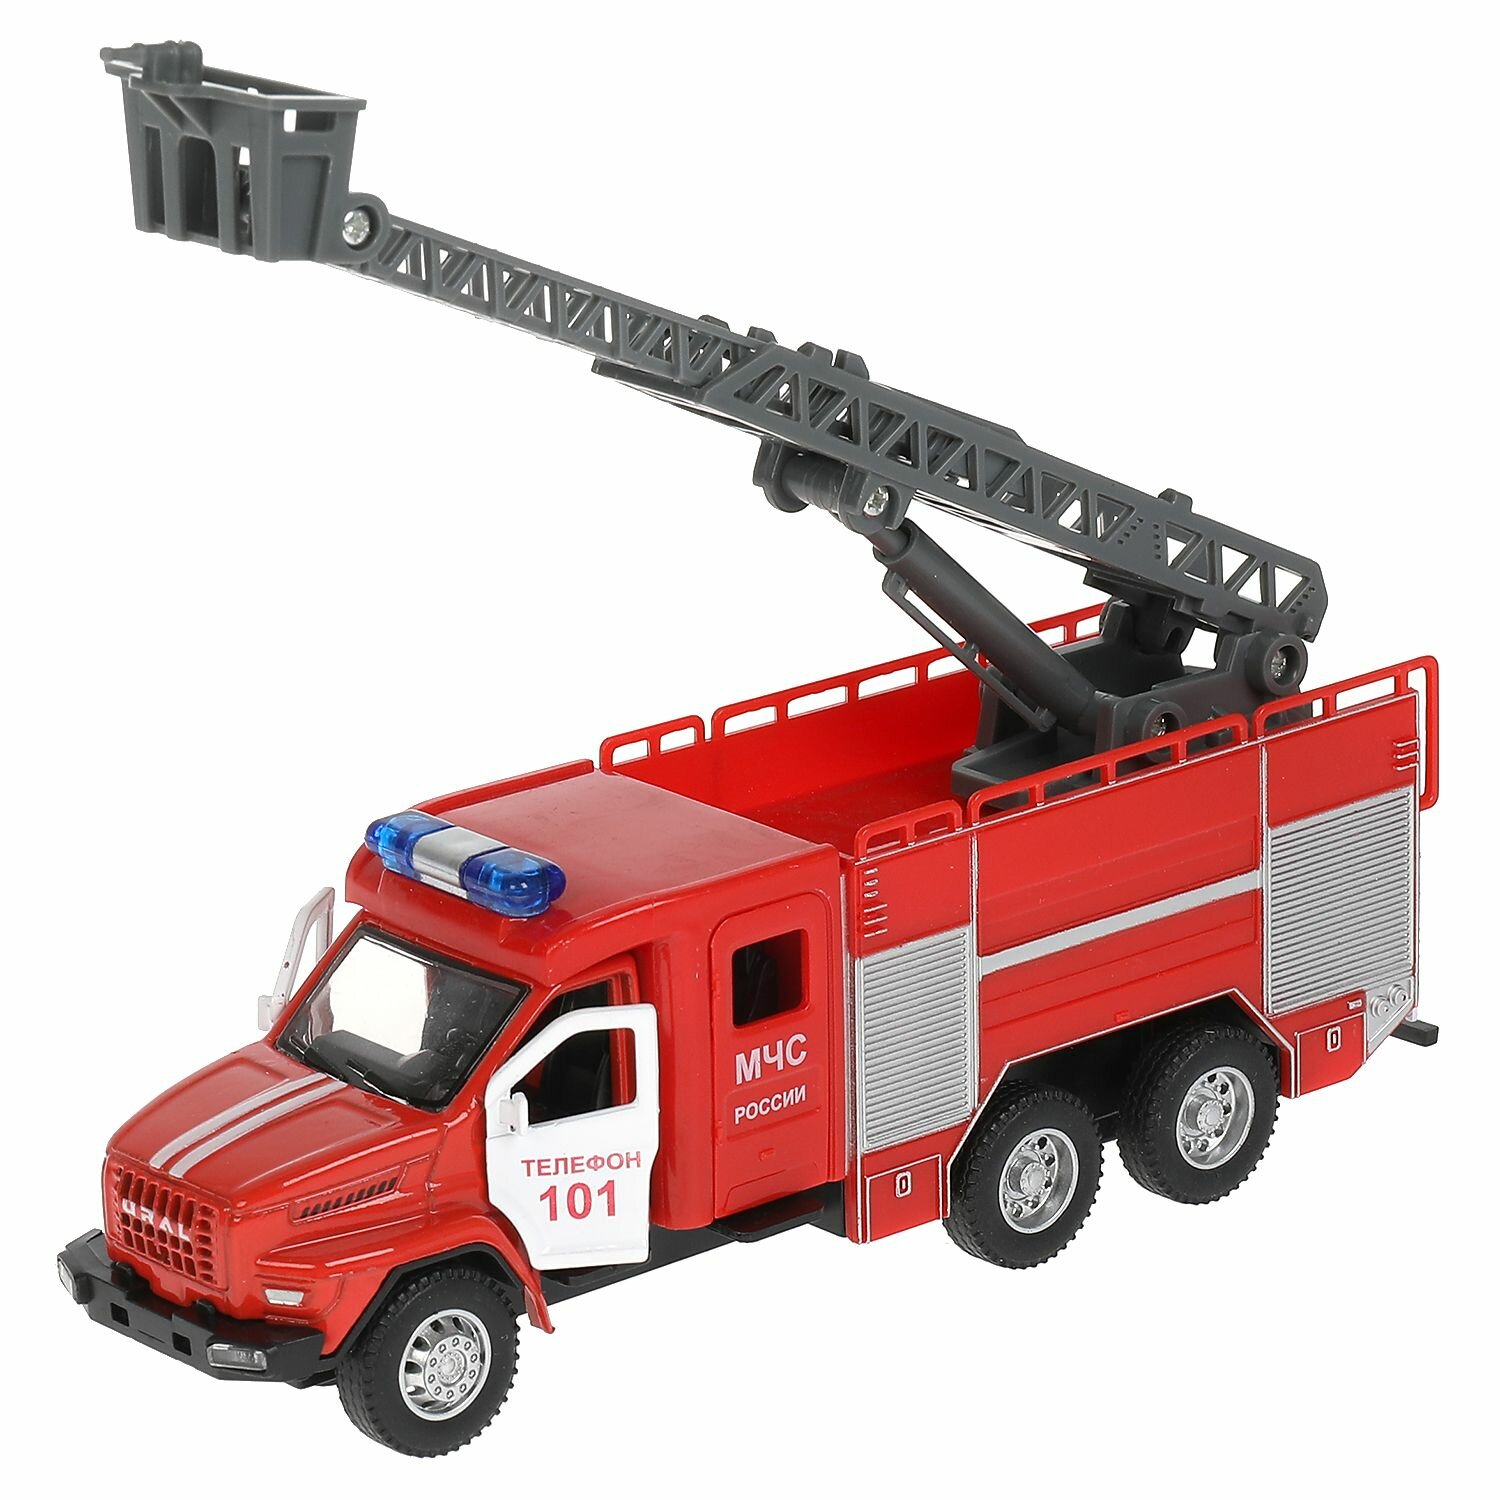 Машинка игрушка детская для мальчика Урал Next Пожарная Технопарк детская металлическая модель коллекционная со звуком и светом 16 см